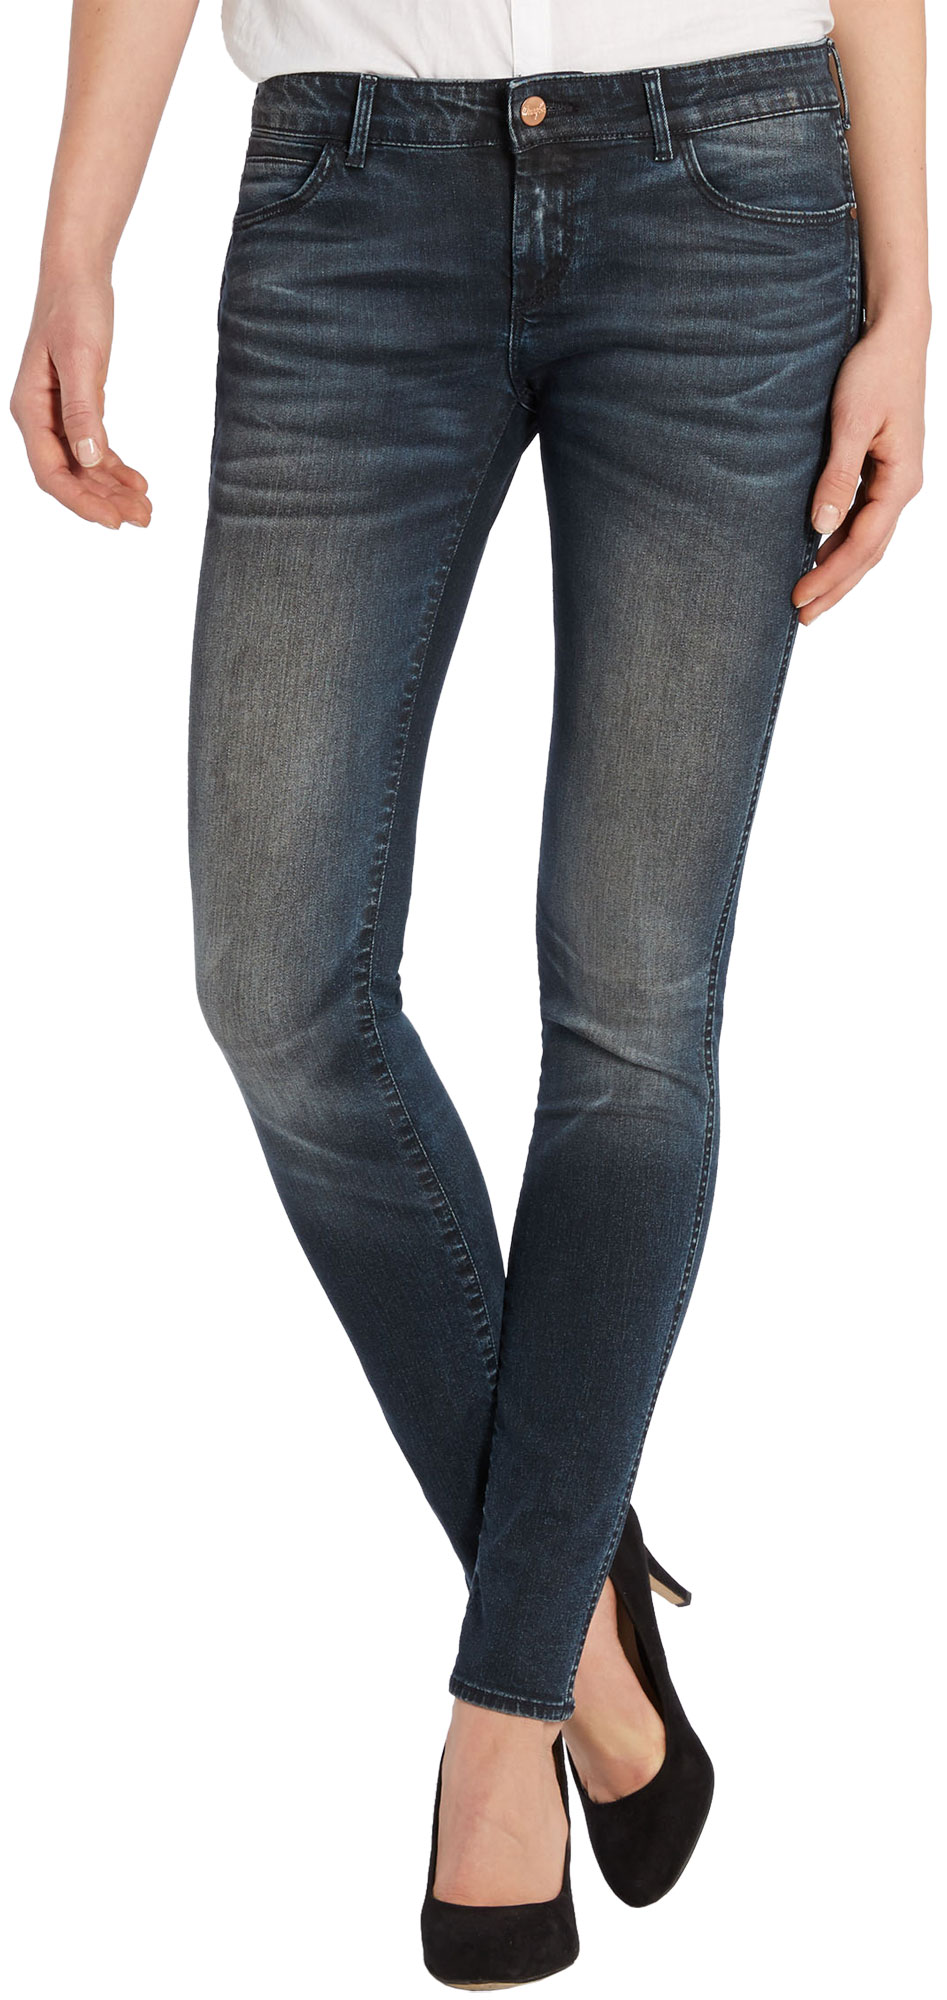 COURTNEY MOONSTONE - Dámské jeansy